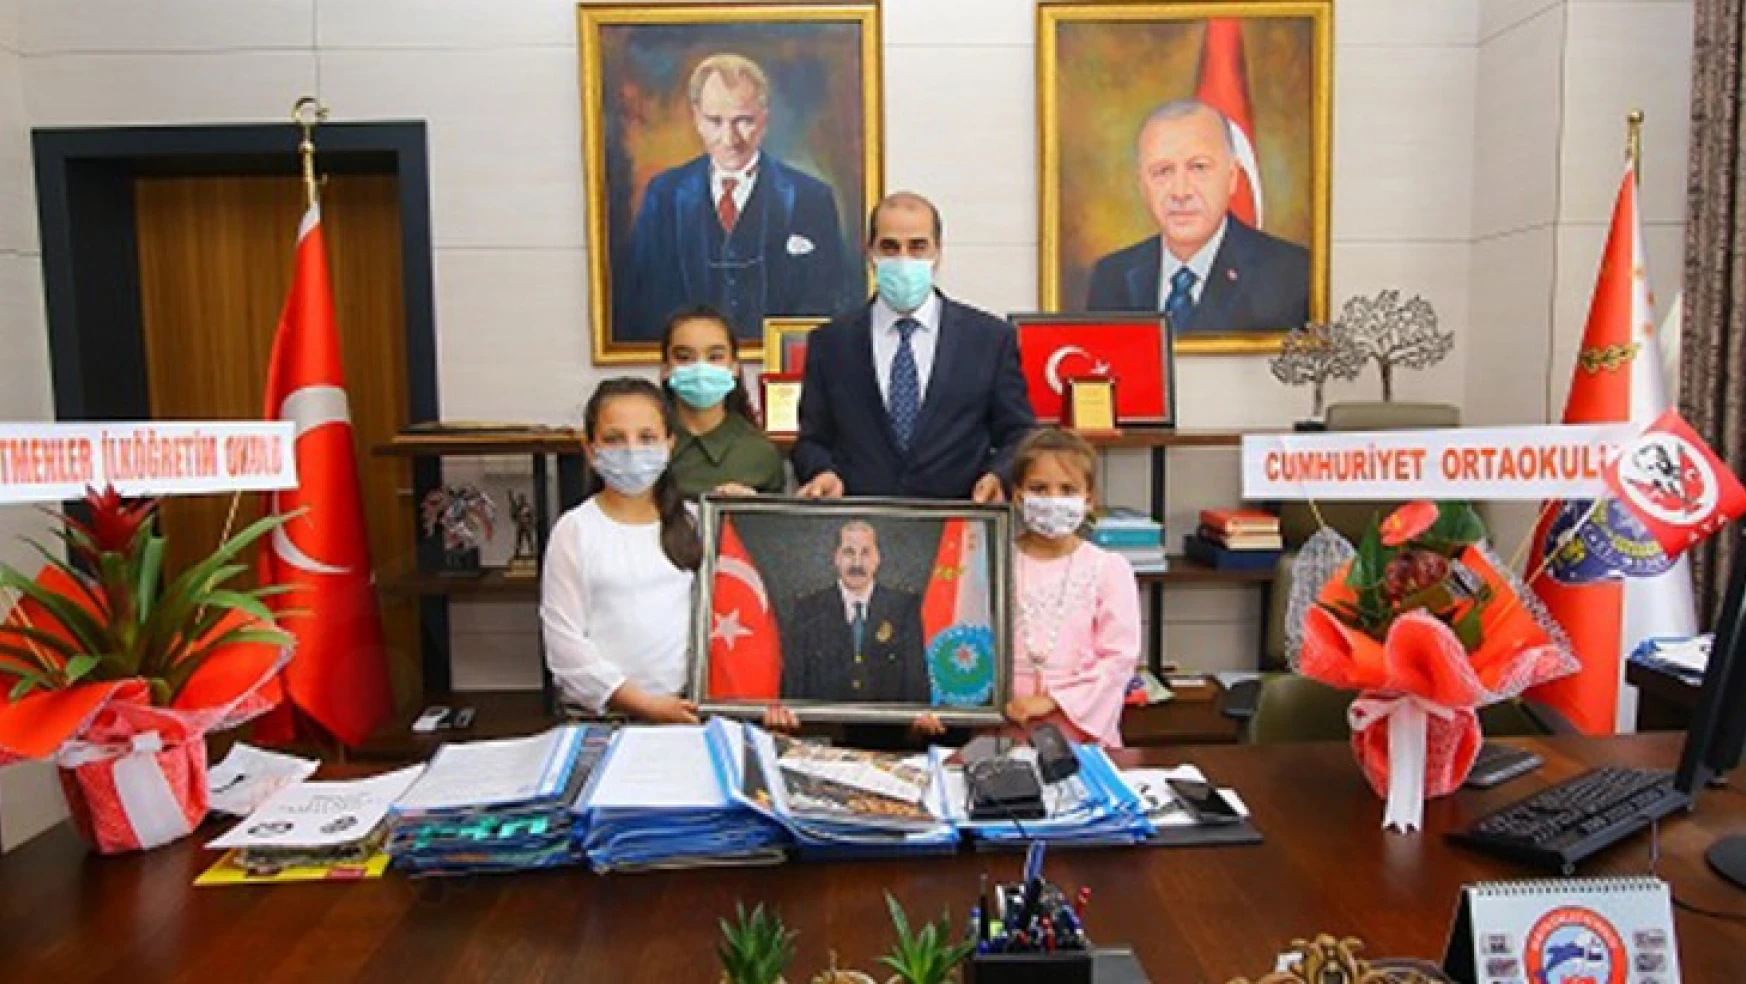 İl Emniyet Müdürü Cebeloğlu, 23 Nisan'da görevini Hayrunnisa'ya devretti